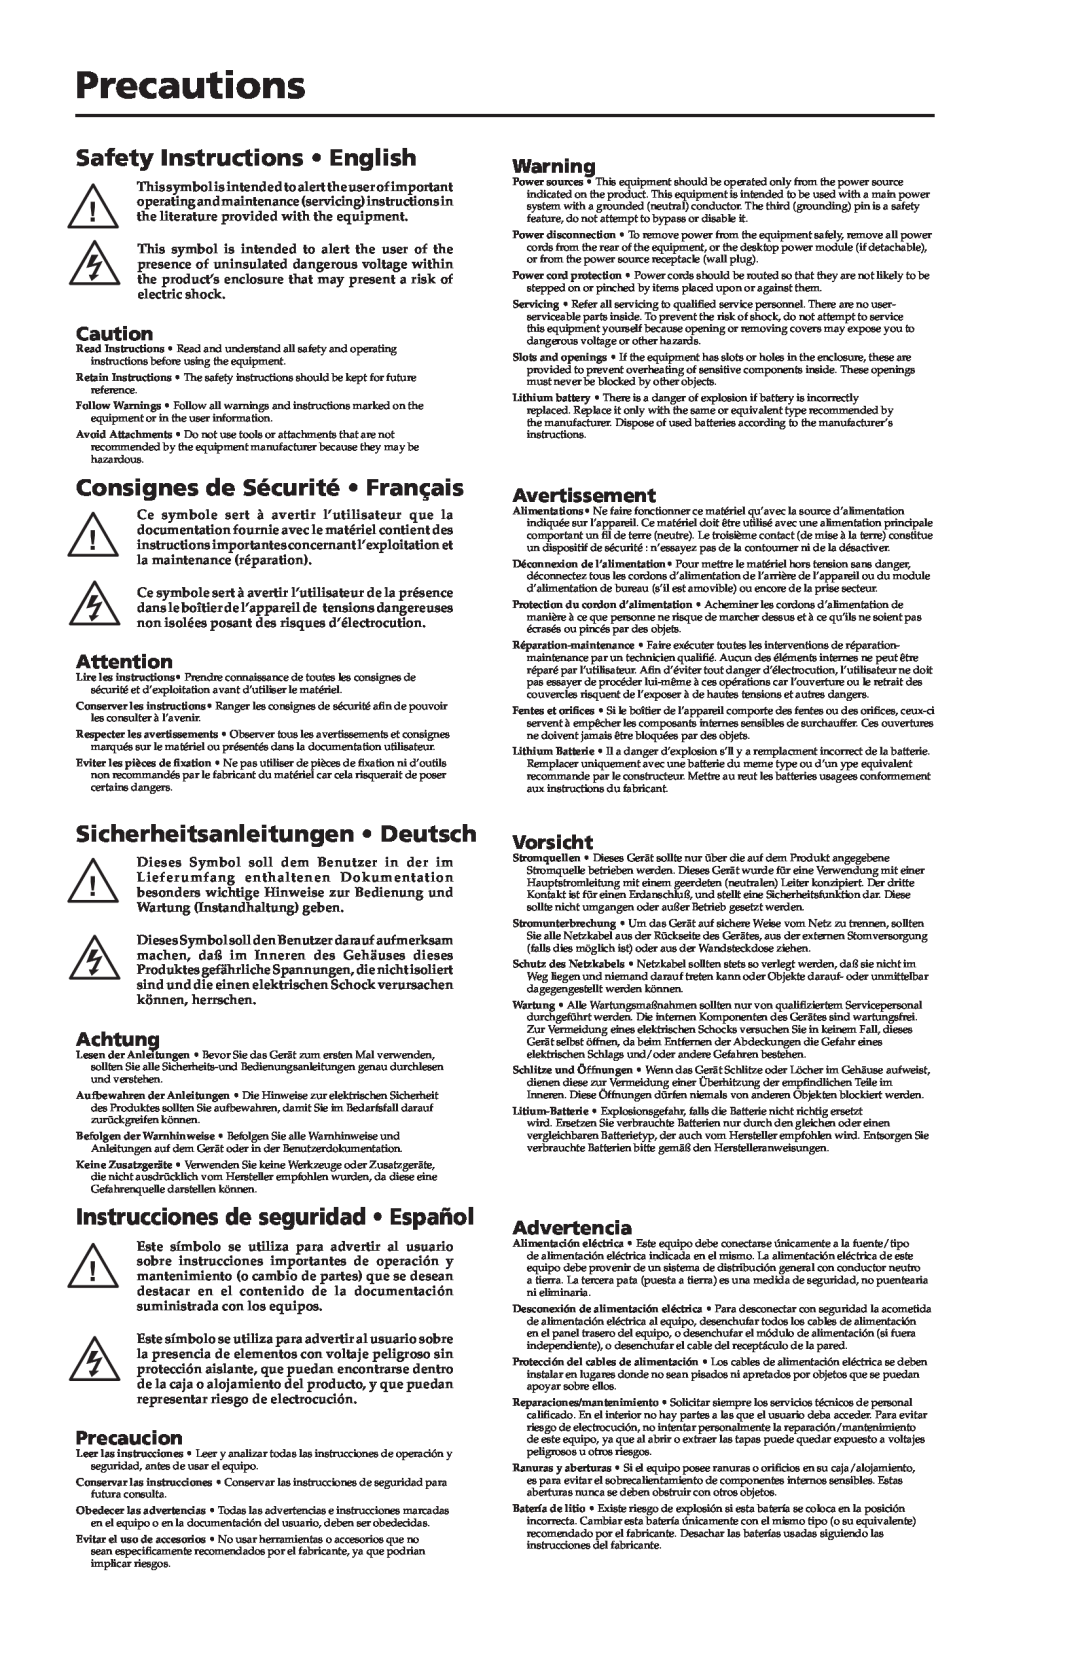 Extron electronic IPL T CR48 manual Precautions, Safety Instructions English, Consignes de Sécurité Français, Avertissement 